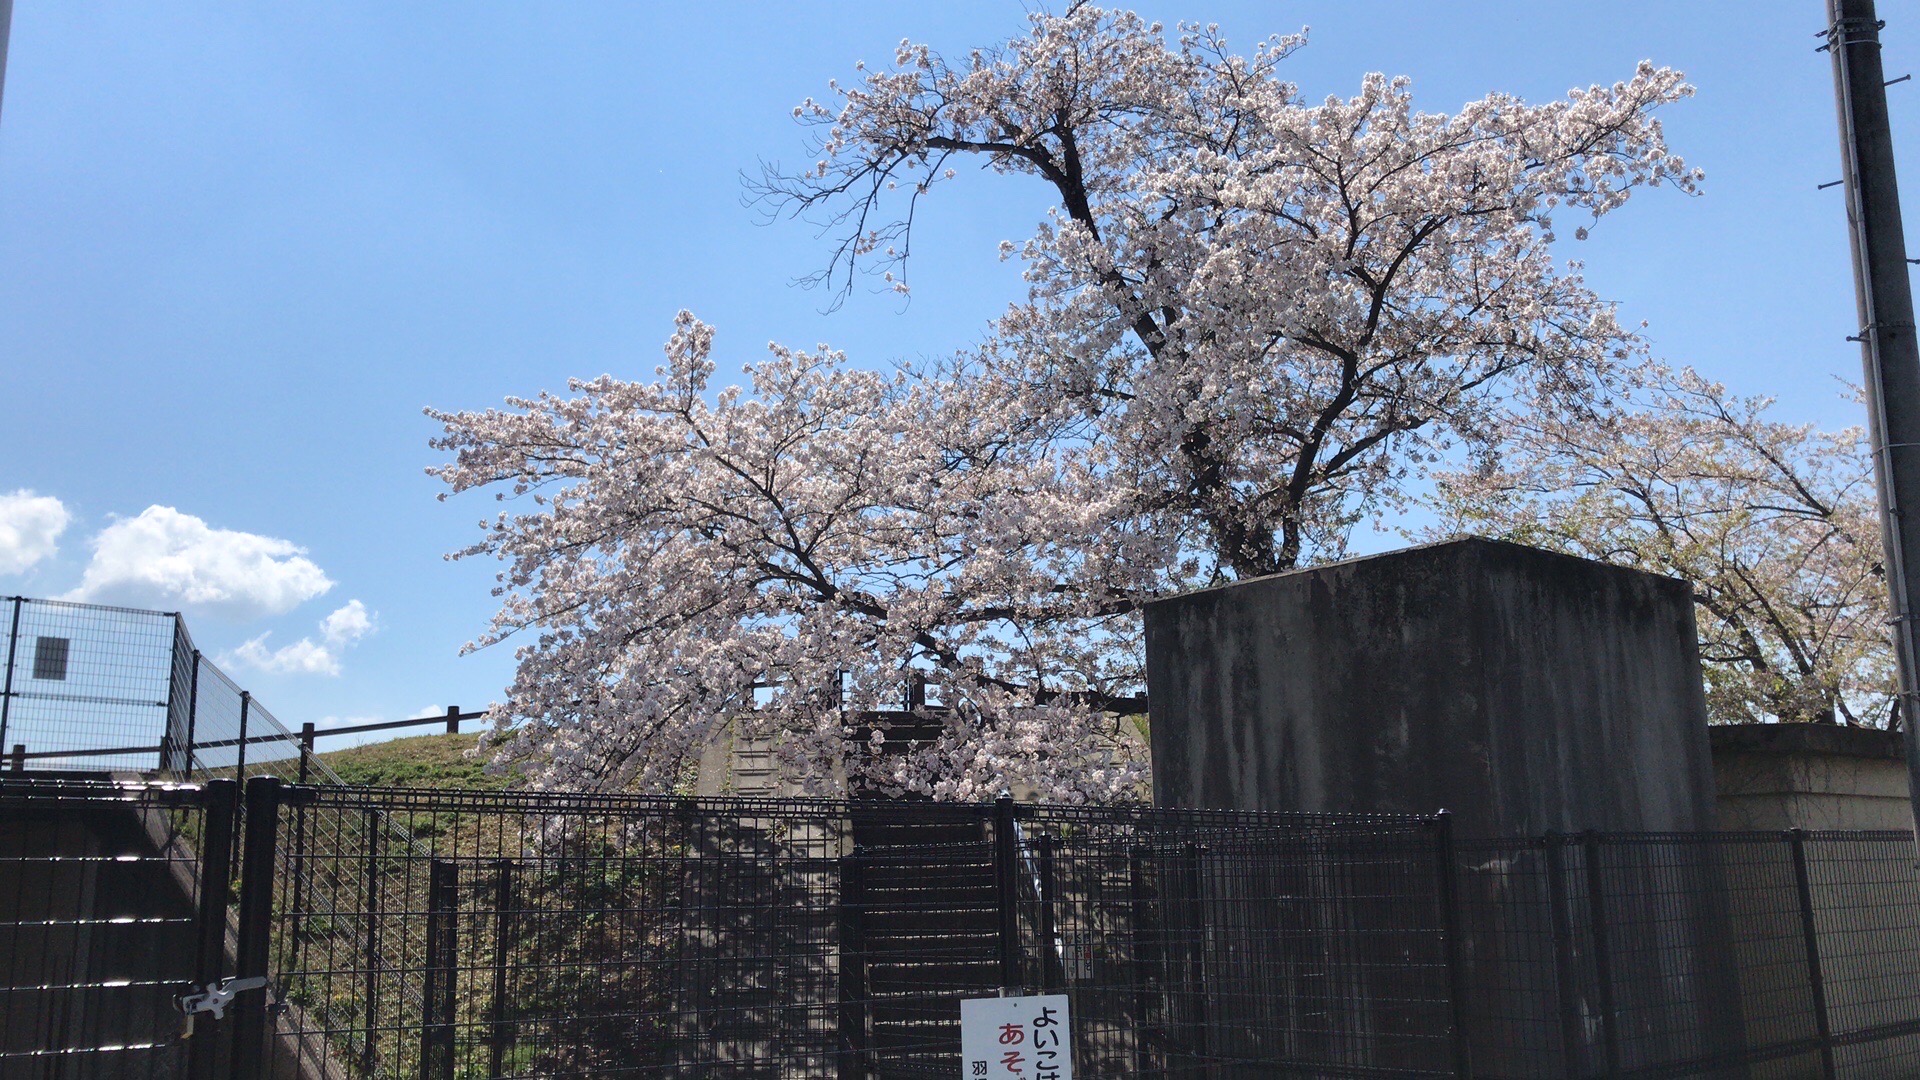 又快到樱花的季节，每年都会去看很漂亮，很有诗意。